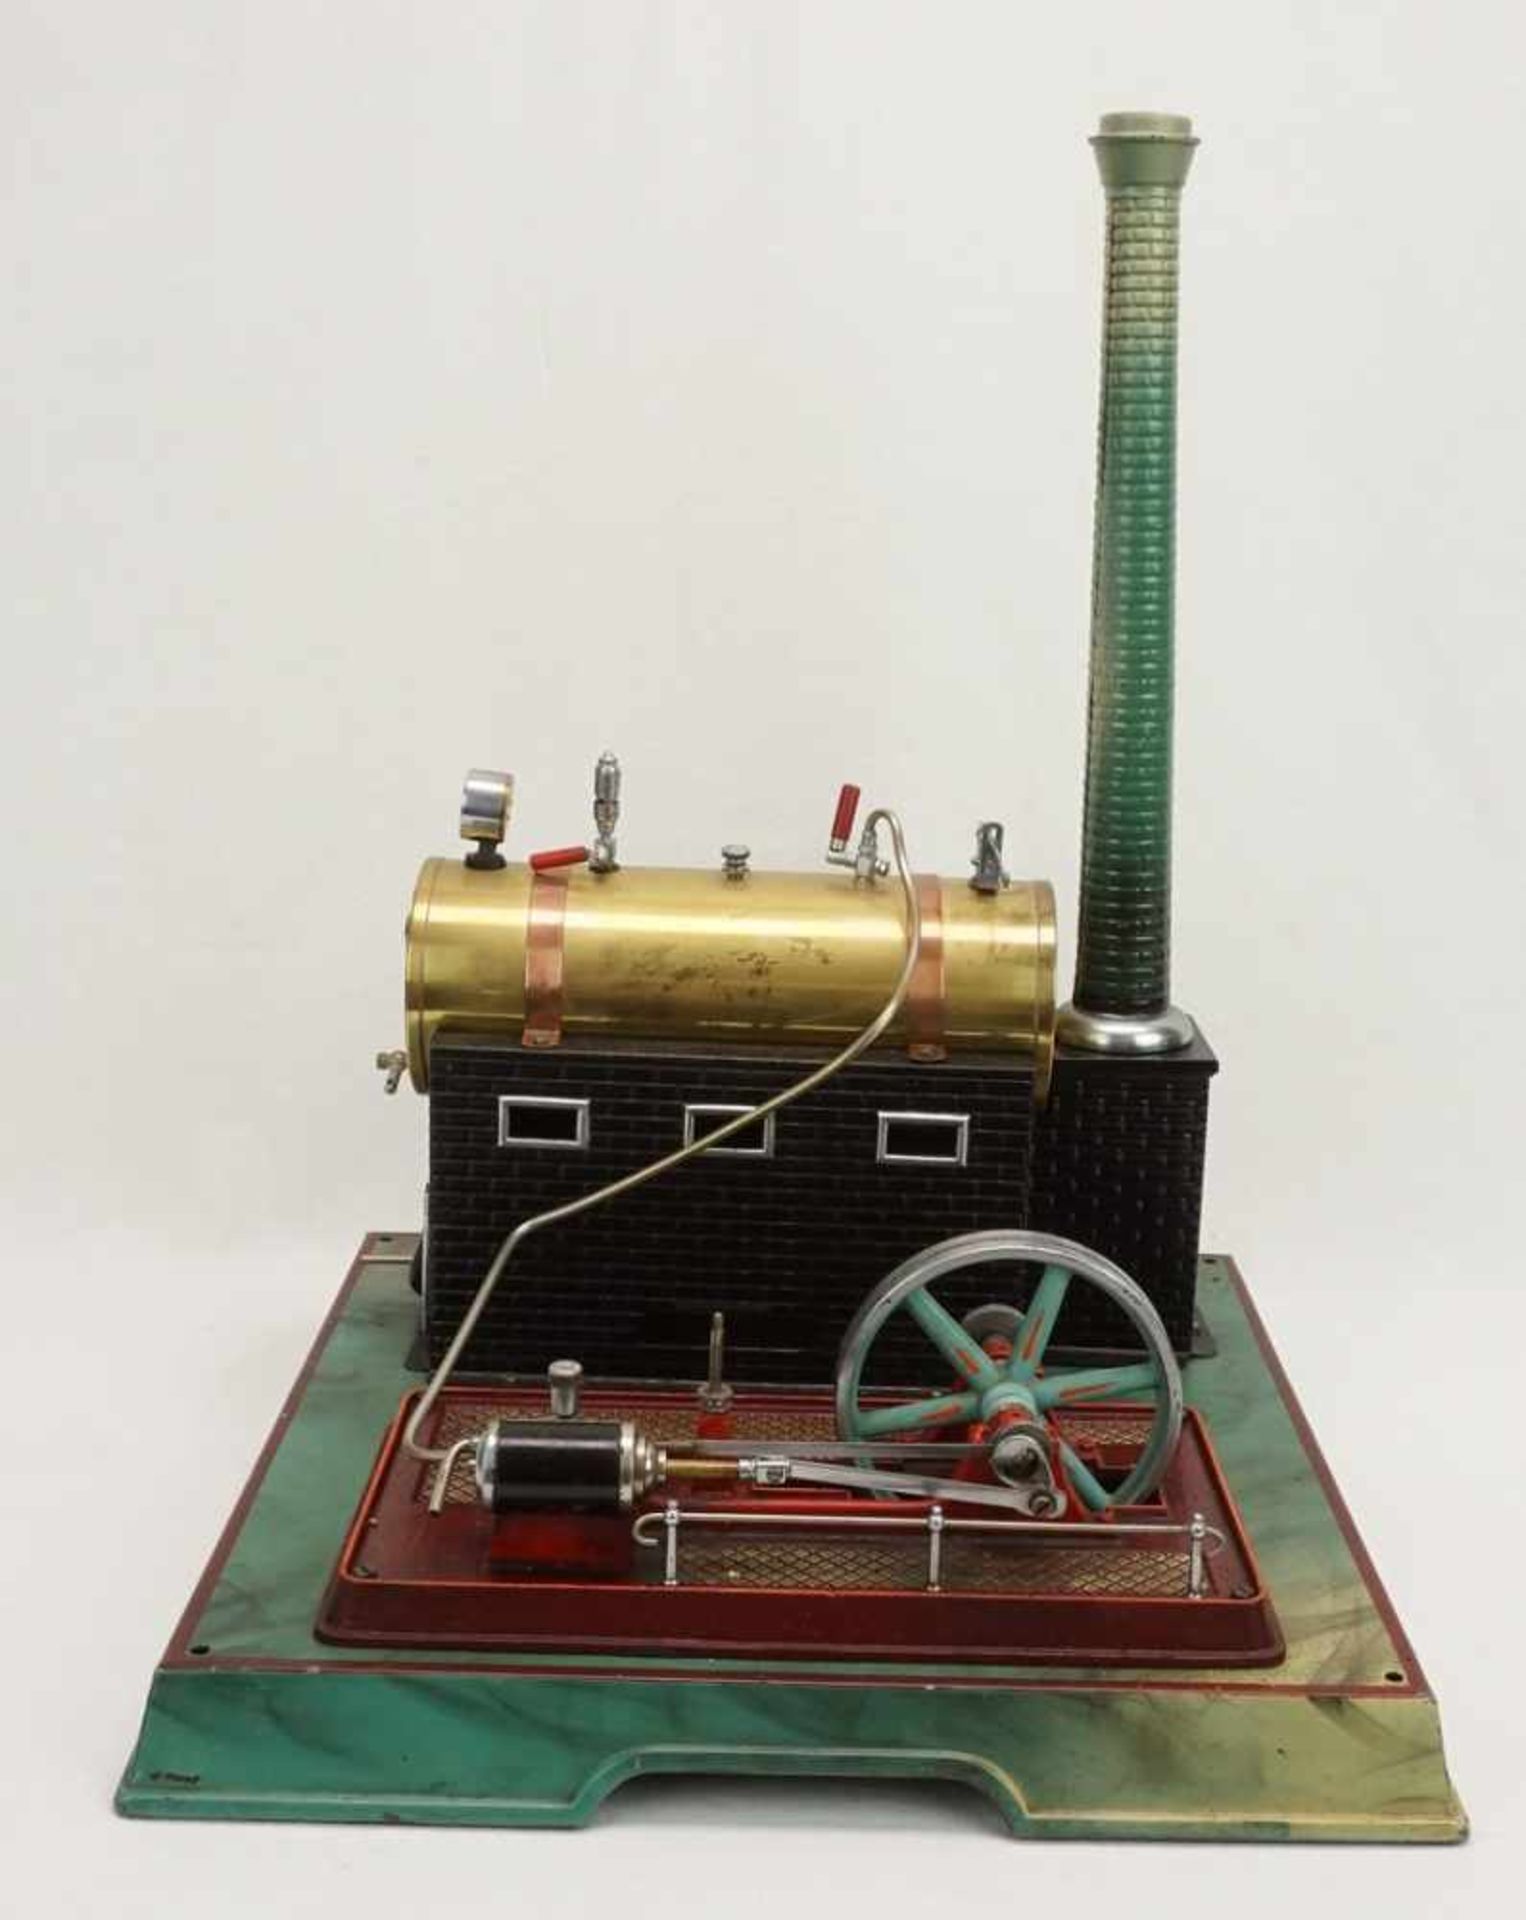 Märklin Dampfmaschine mit Transmissionliegender Messingkessel, mit Armaturen und feststehendem - Image 2 of 4